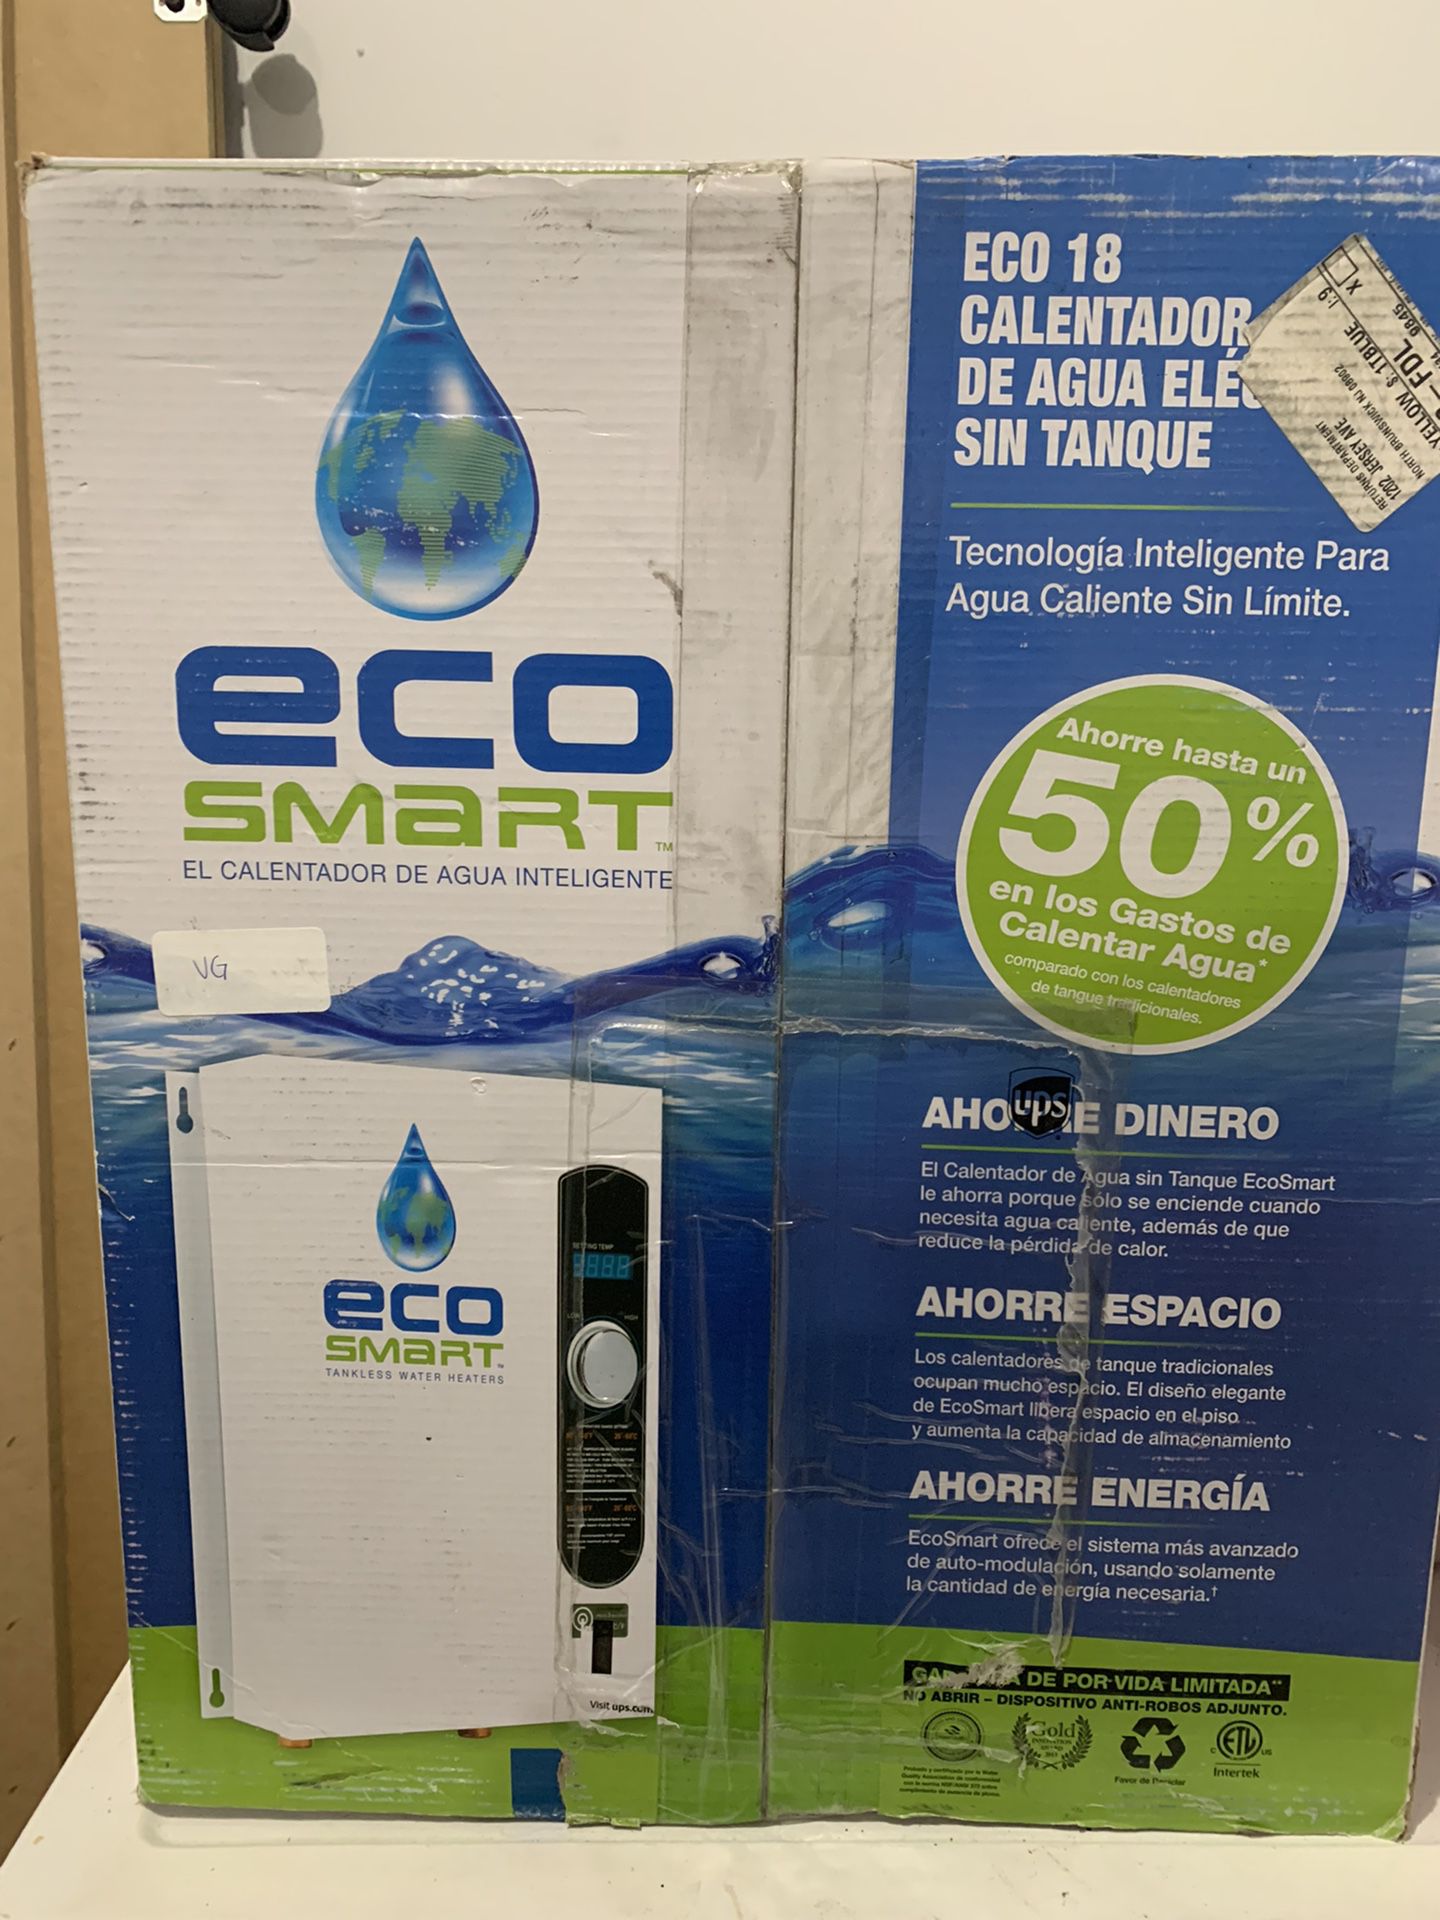 Tankless Water heater (EcoSmart 18)